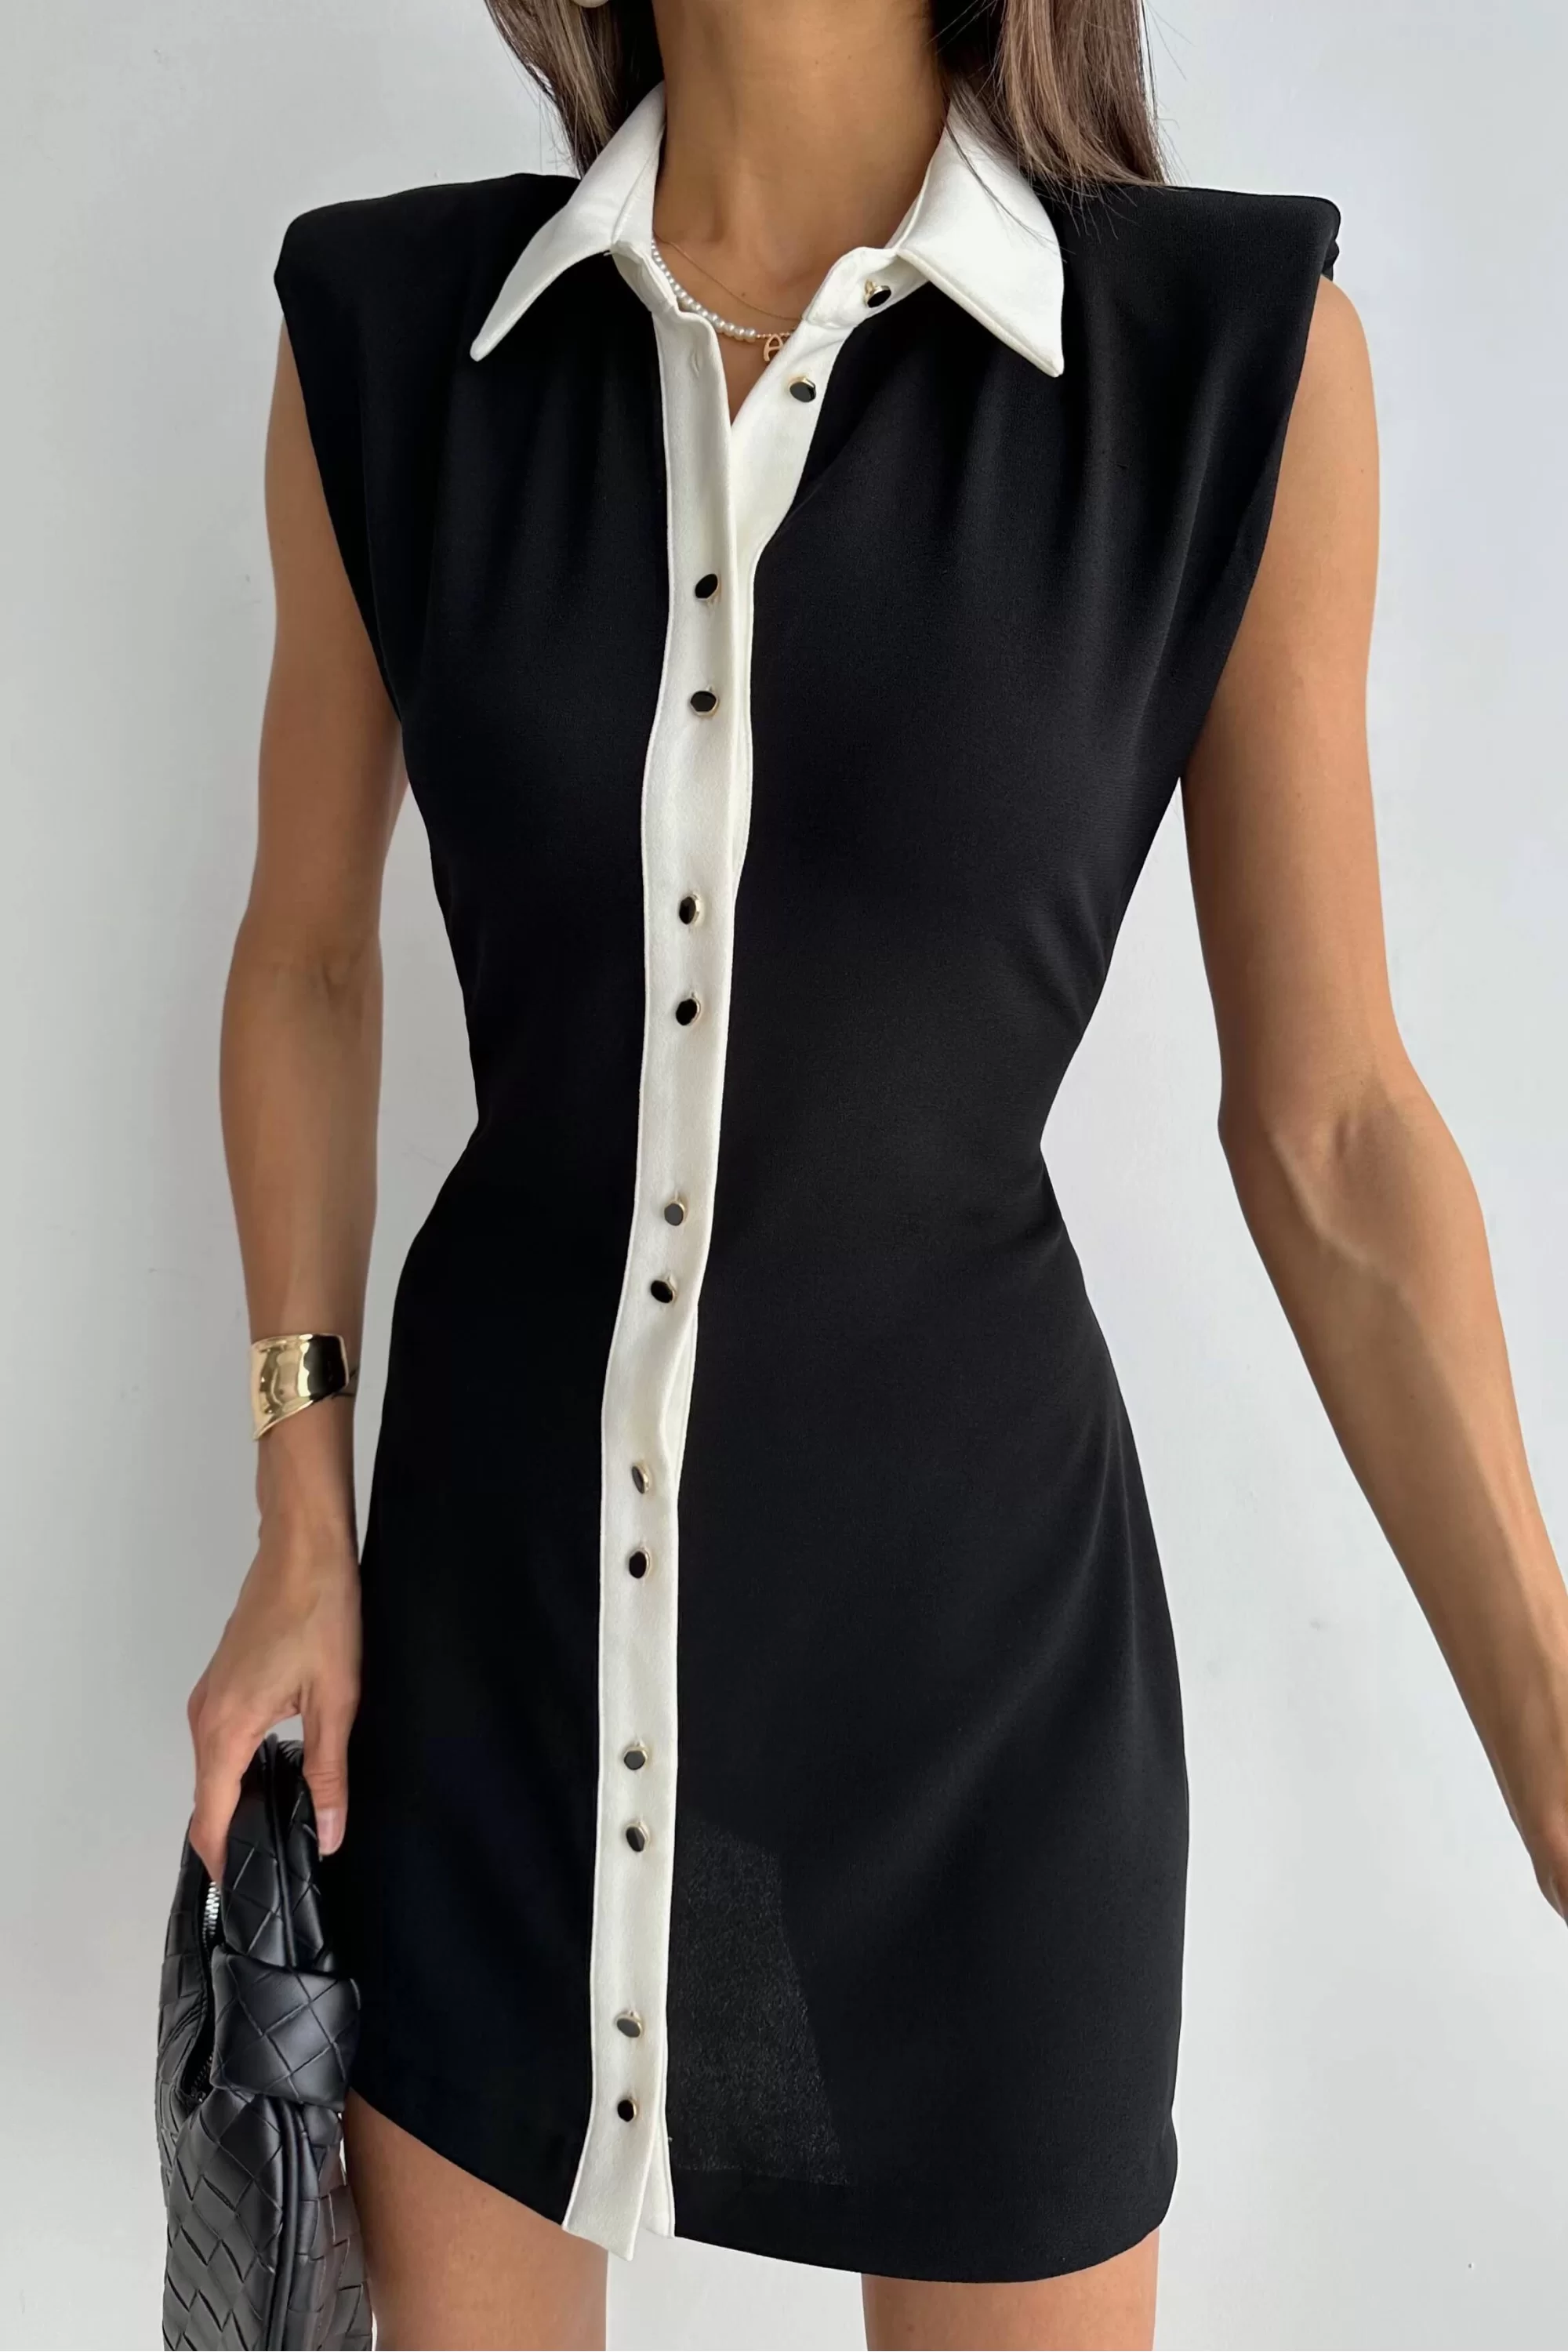 Kadın Siyah Vatkalı Düğmeli Elbise 0709-4050